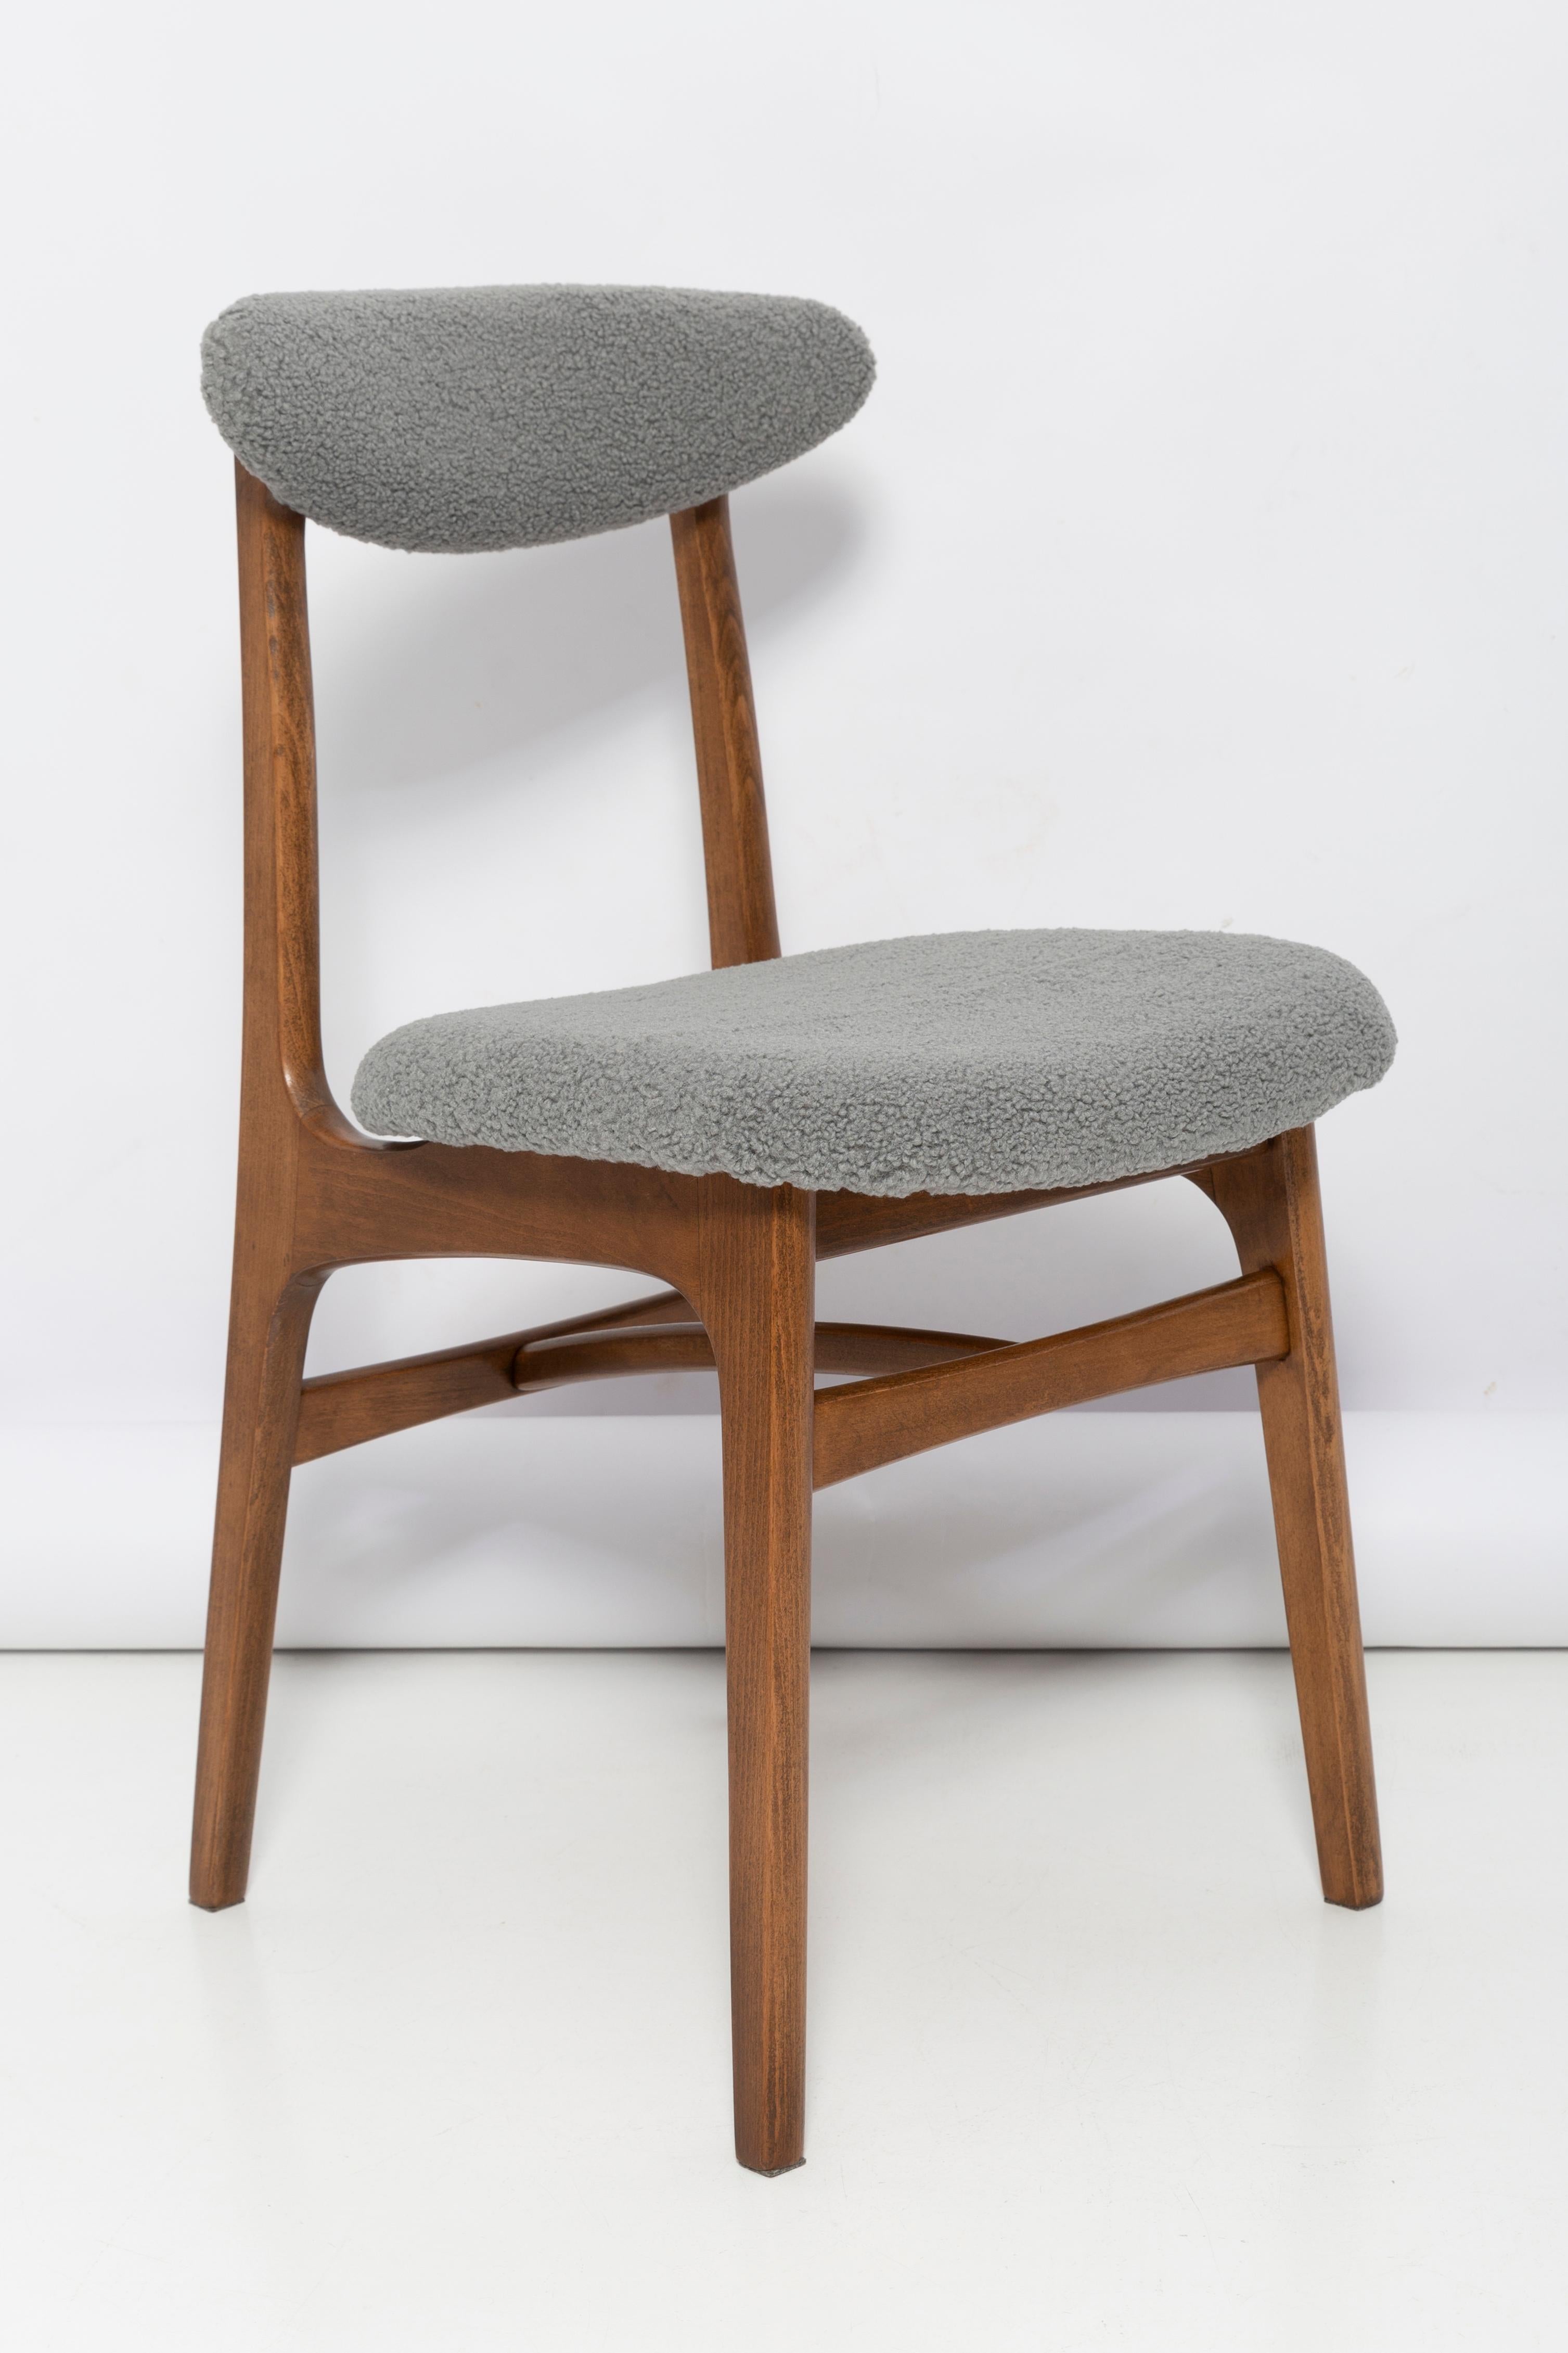 Leichte Form, schöner Vintage-Stuhl, entworfen von Prof. Rajmund Halas. Es wurde aus Buchenholz gefertigt. Entworfen und hergestellt in Polen. Der Stuhl wurde komplett neu gepolstert, die Holzarbeiten wurden aufgefrischt. Die Sitze und Rückenlehnen